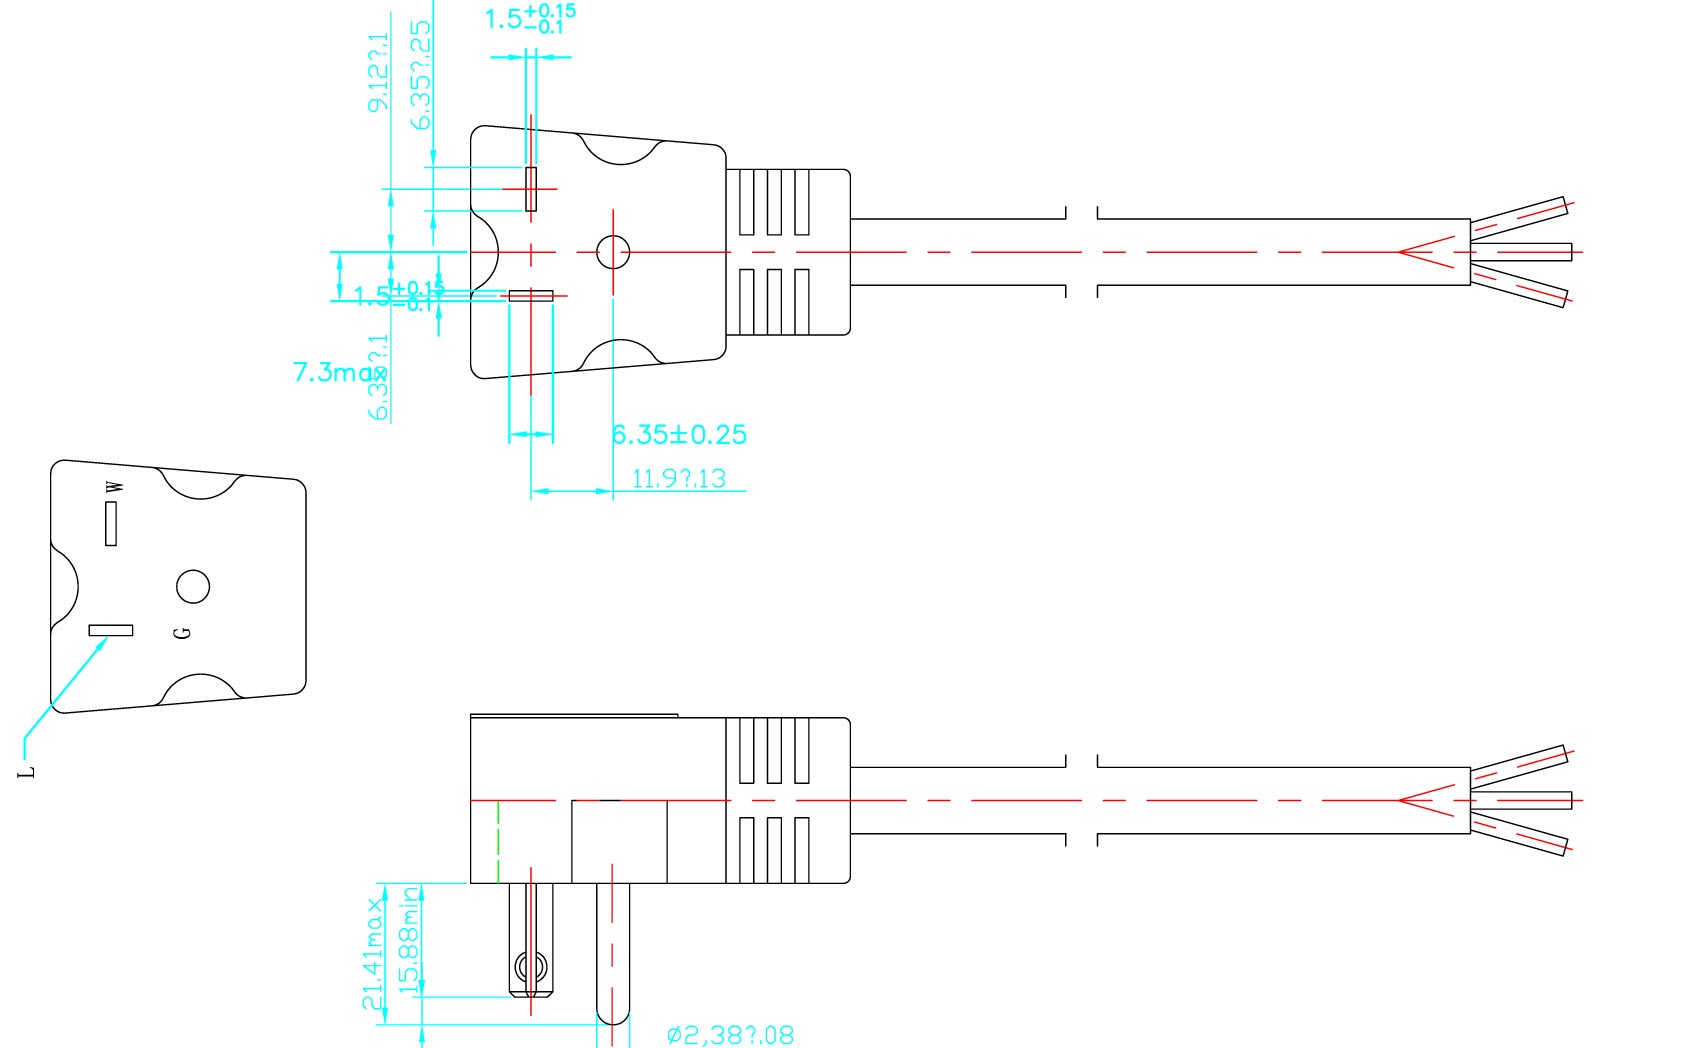 5-20P Angle Plug 20A 125V Power Cord